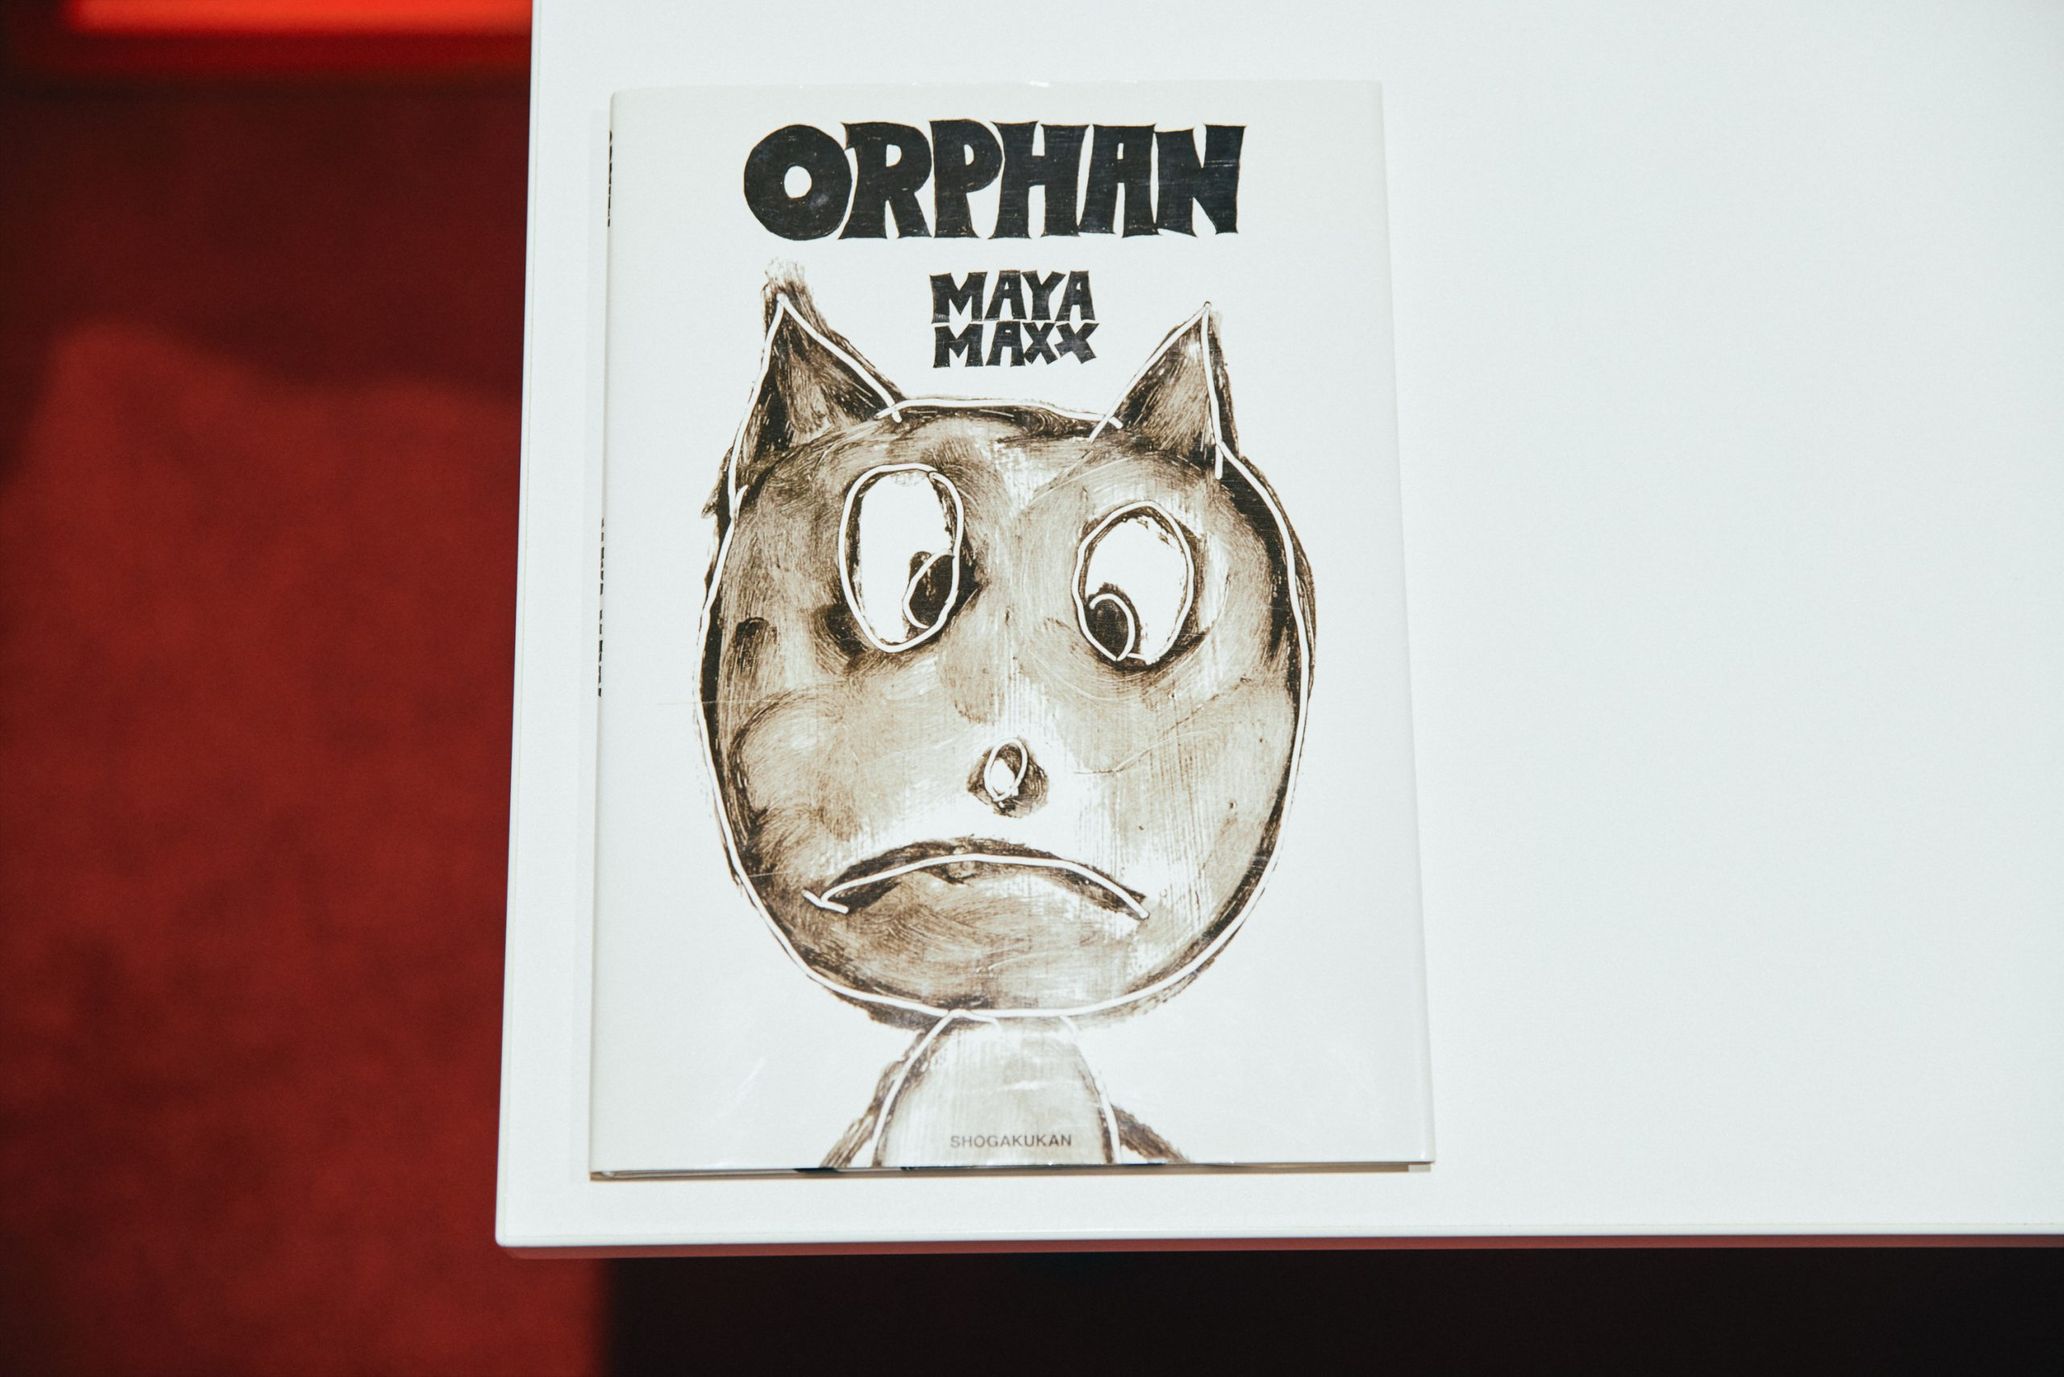 『ORPHAN』（小学館）はアーティストであるMAYA MAXXによる絵本。1人ぼっちになった猫の叫びを濃淡がある白黒のタッチで描写する。